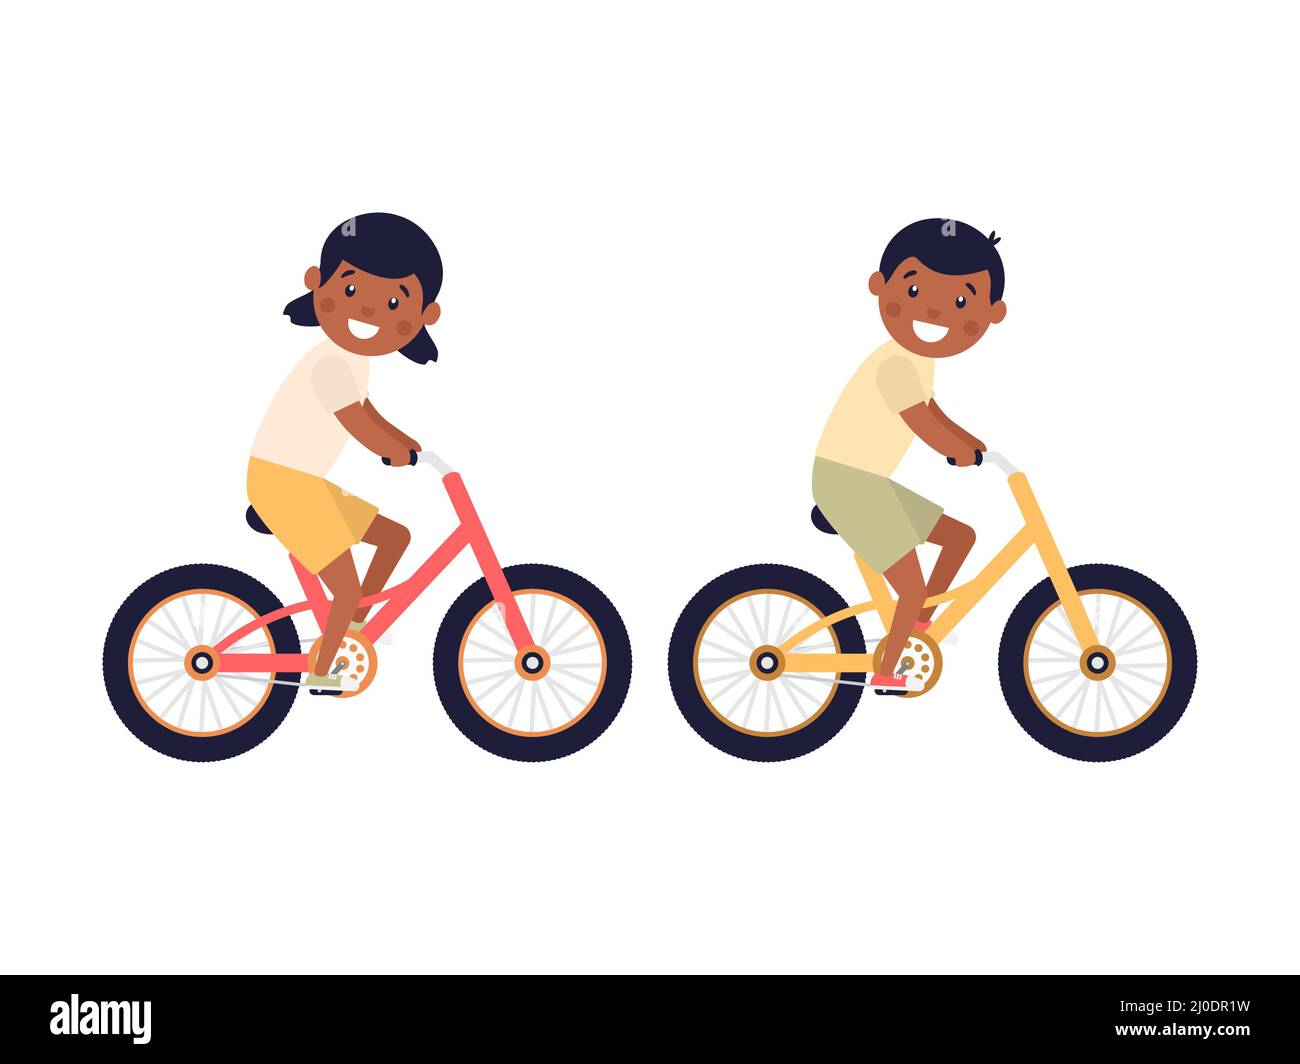 Nette glückliche amerikanische Kinder, die Fahrräder reiten. Afrikanisches Mädchen und Junge fahren Fahrräder. Gesunder Lebensstil. Stock Vektor